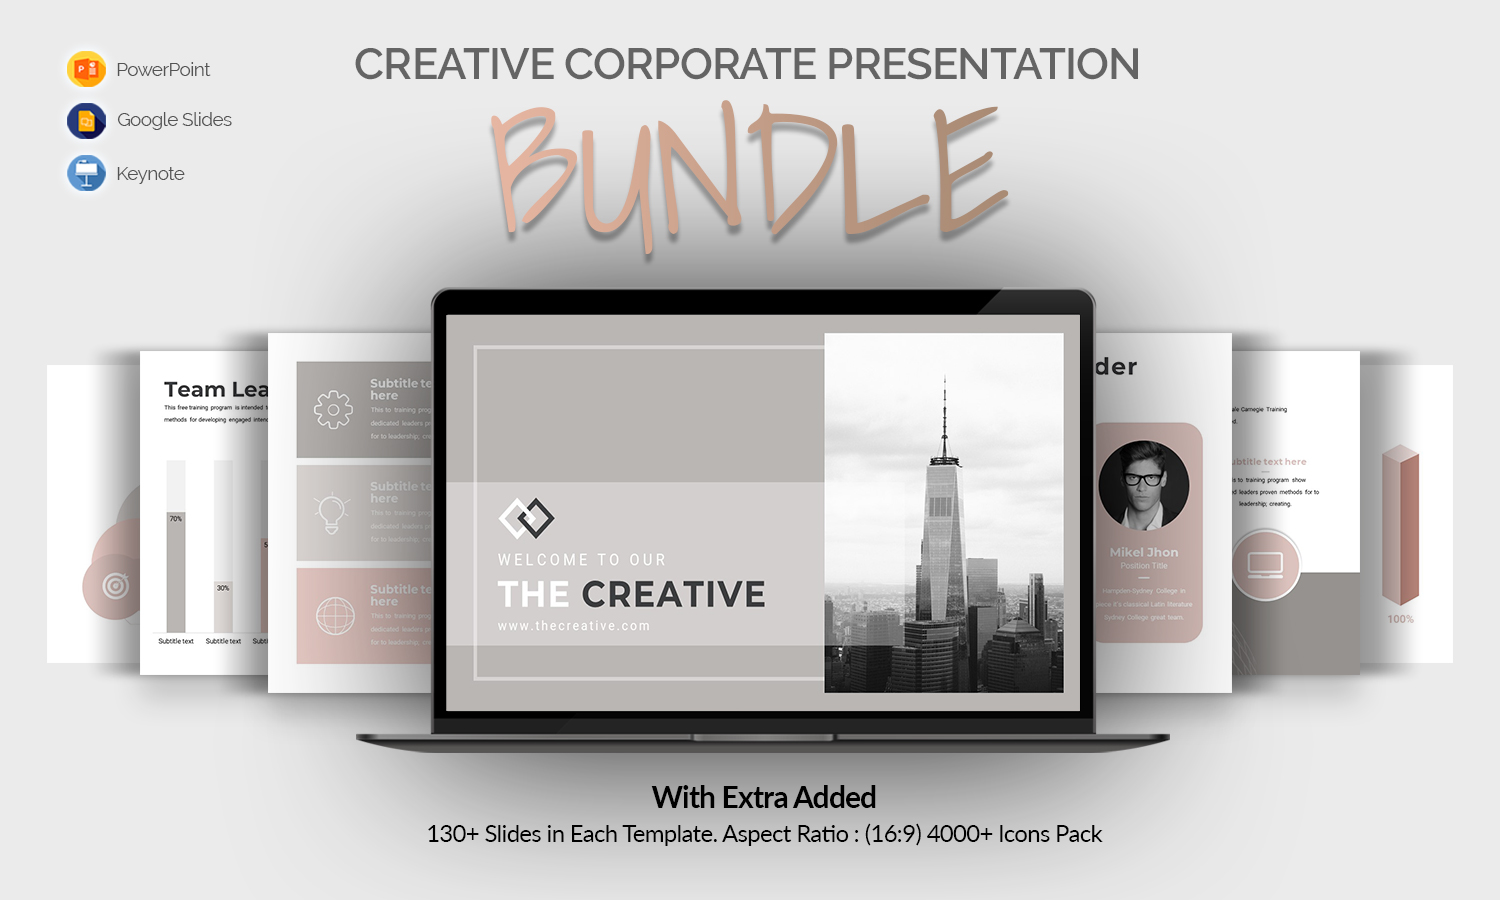 The Creative Corporate Presentation Bundle